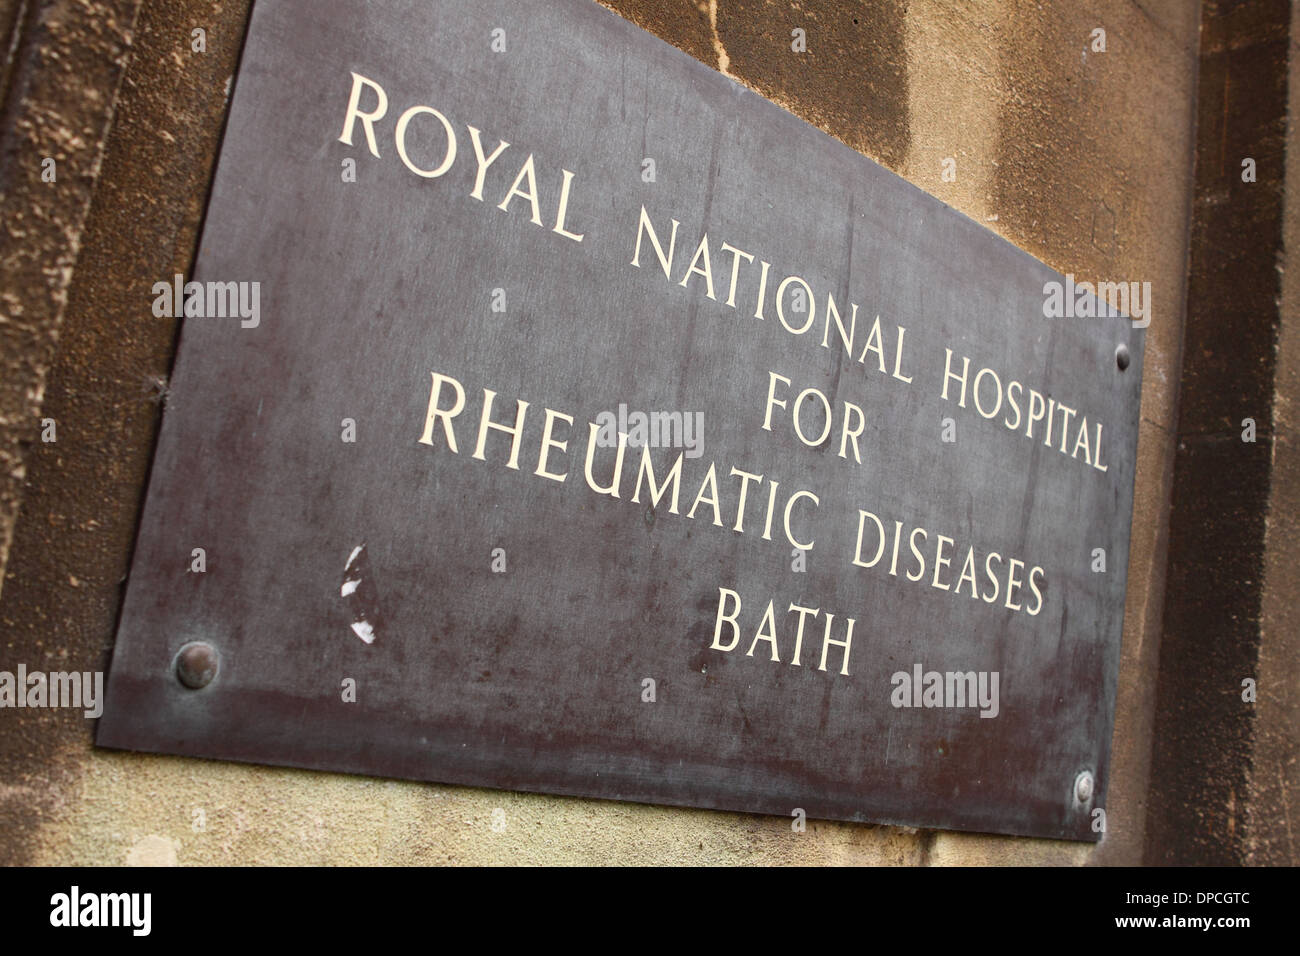 L'Angleterre Bath Royal National Hospital for Rheumatic Diseases panneau d'entrée Banque D'Images